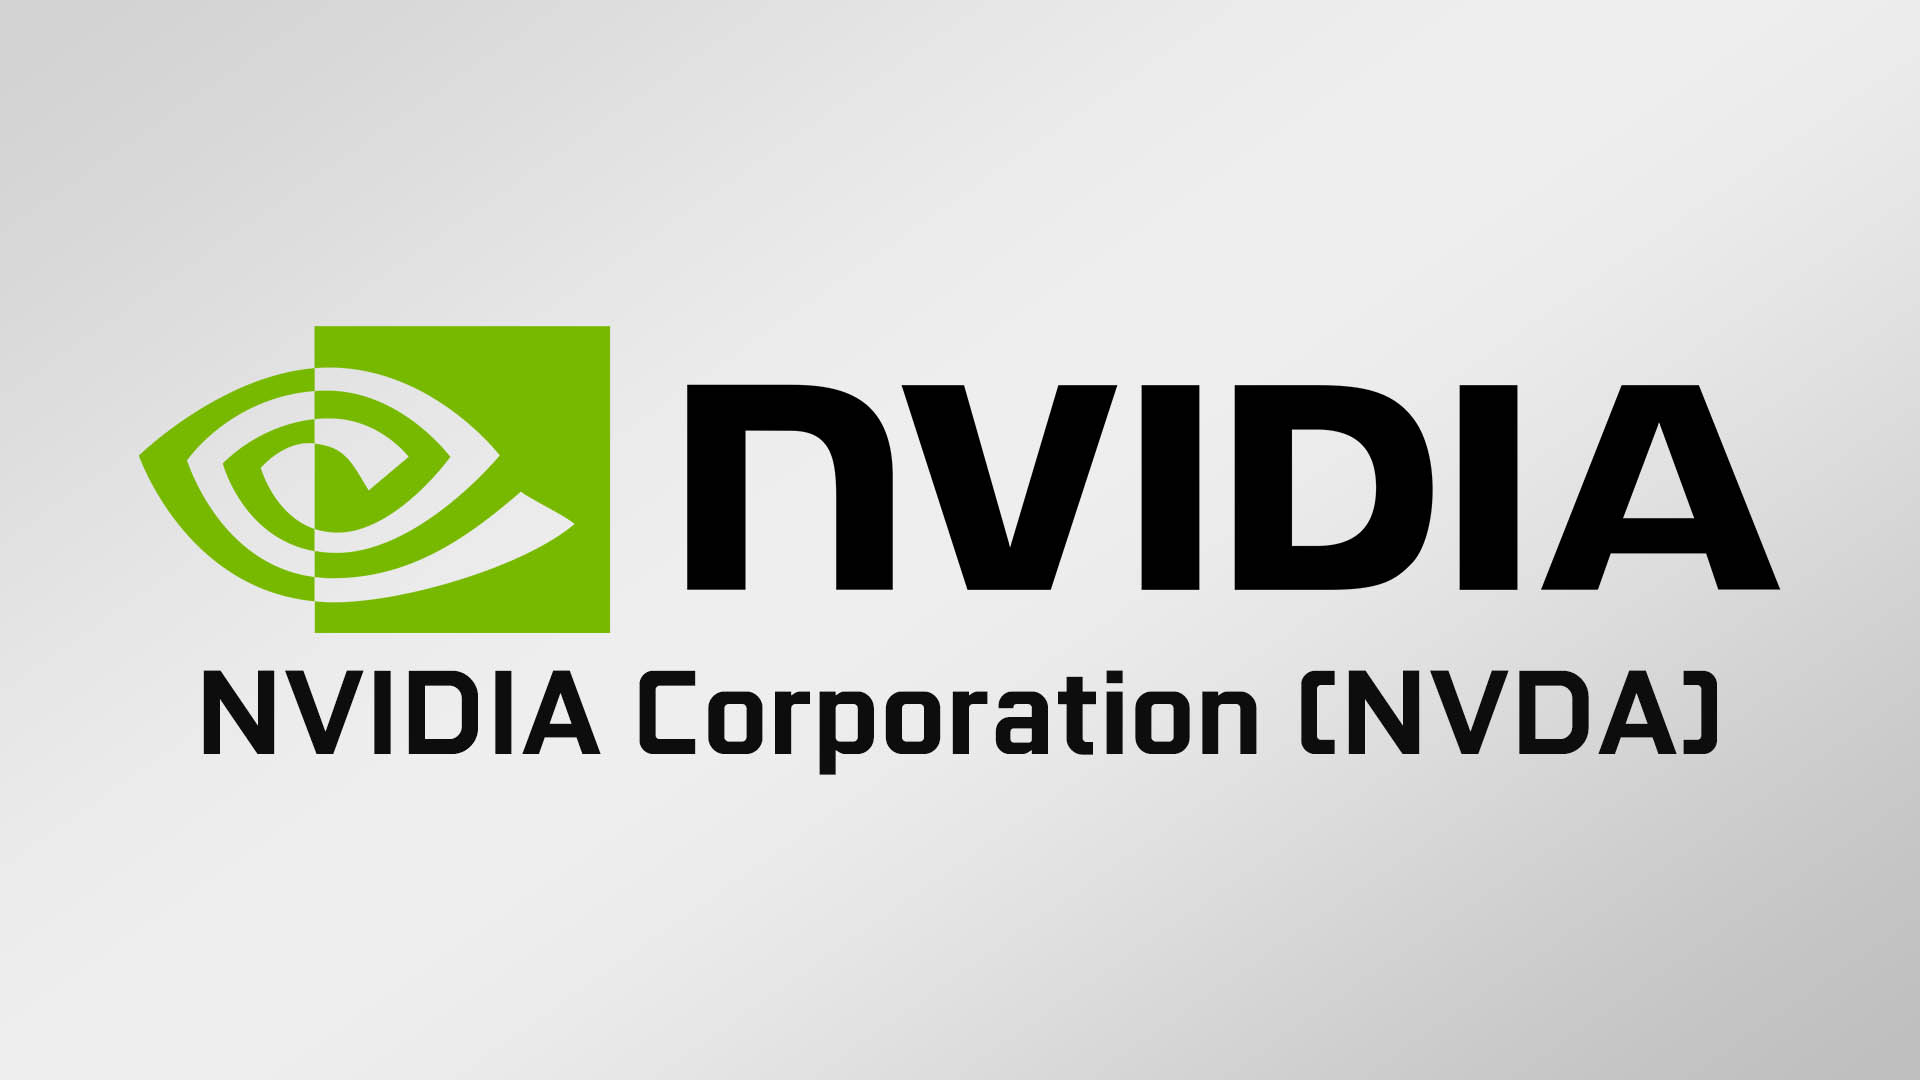 NVIDIAが上方修正。CMPシリーズは予測より約100億円上振れる売上高